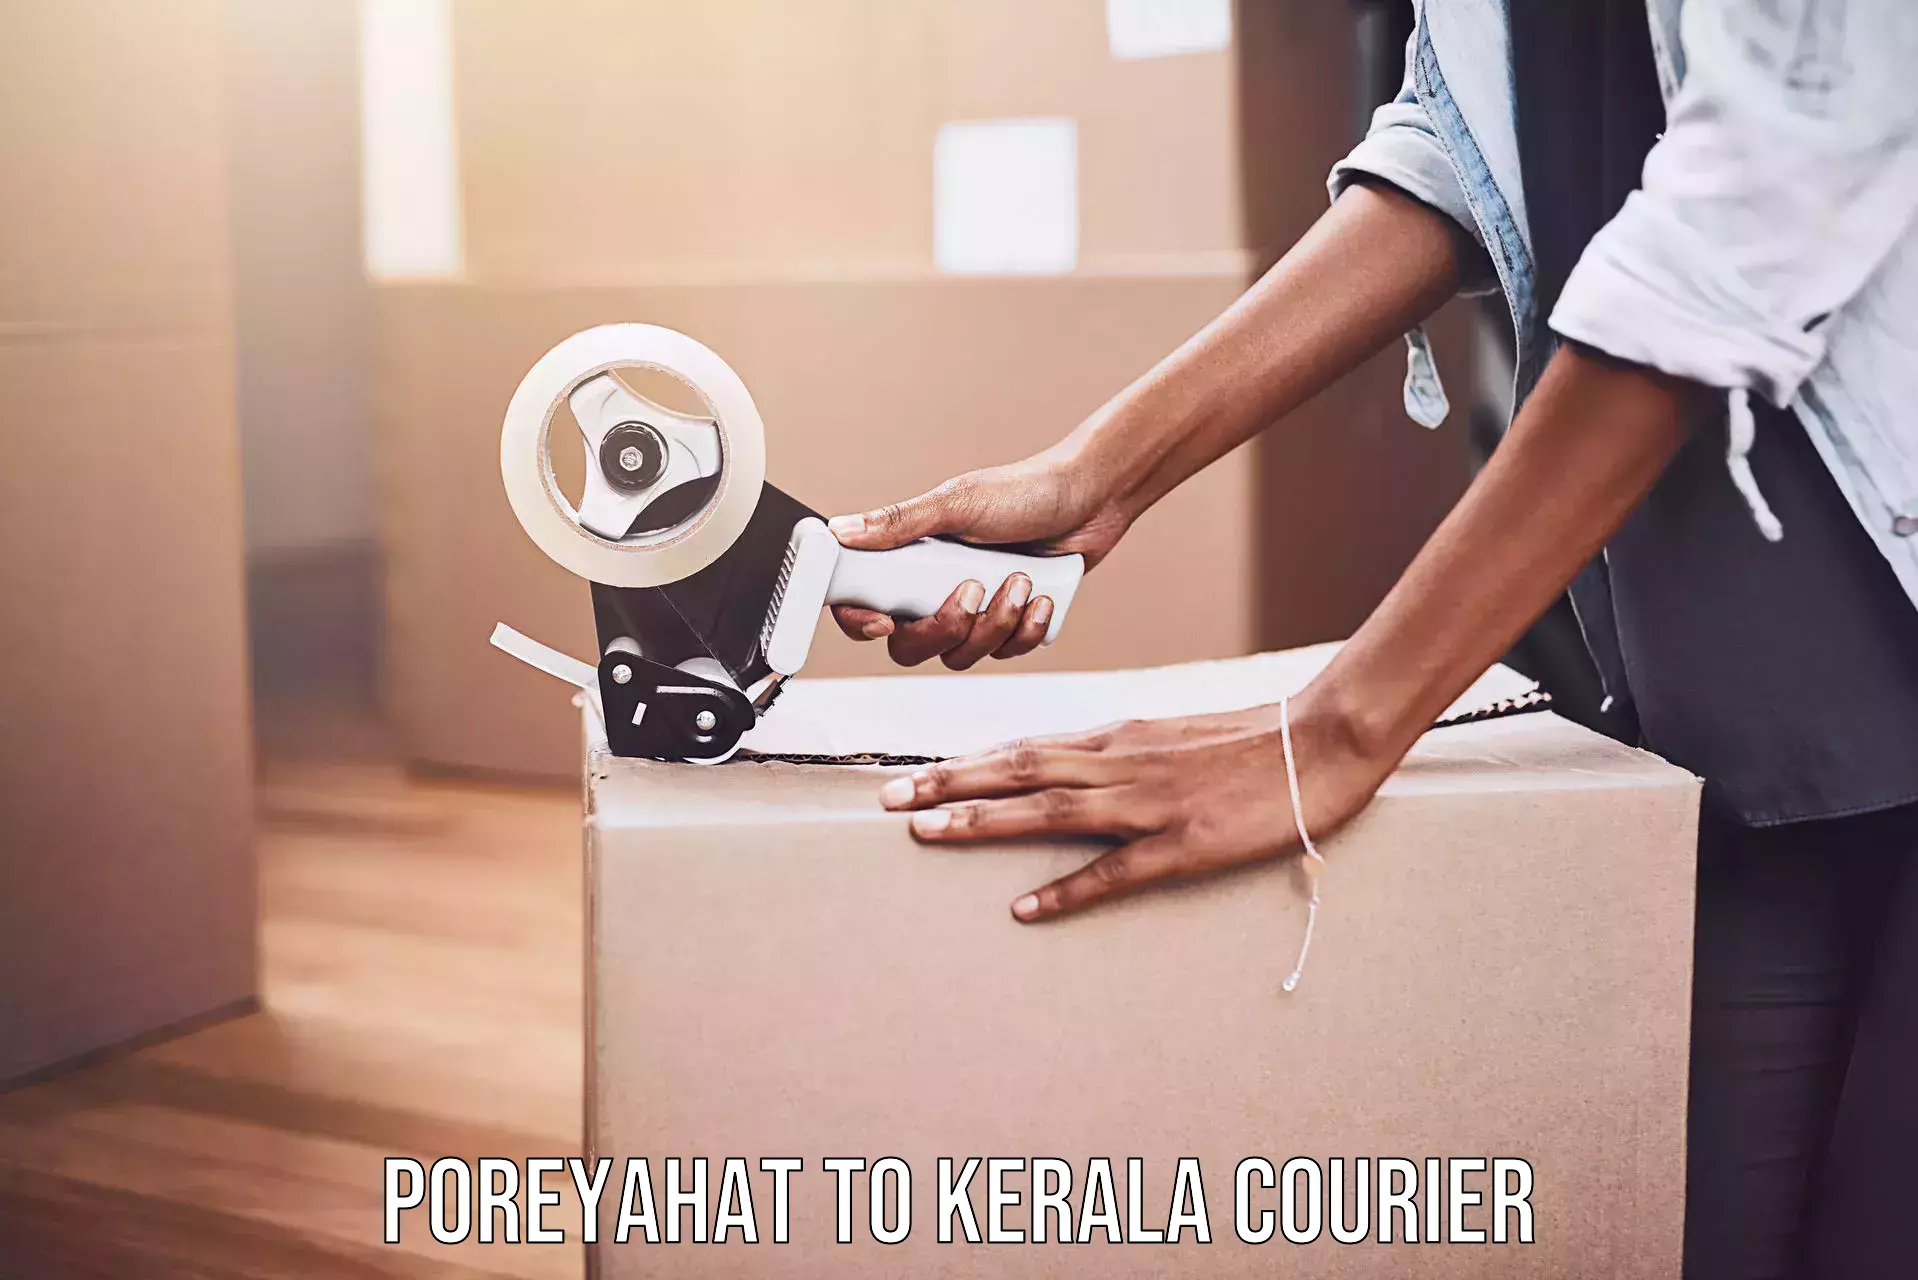 Courier service comparison Poreyahat to Mavelikara